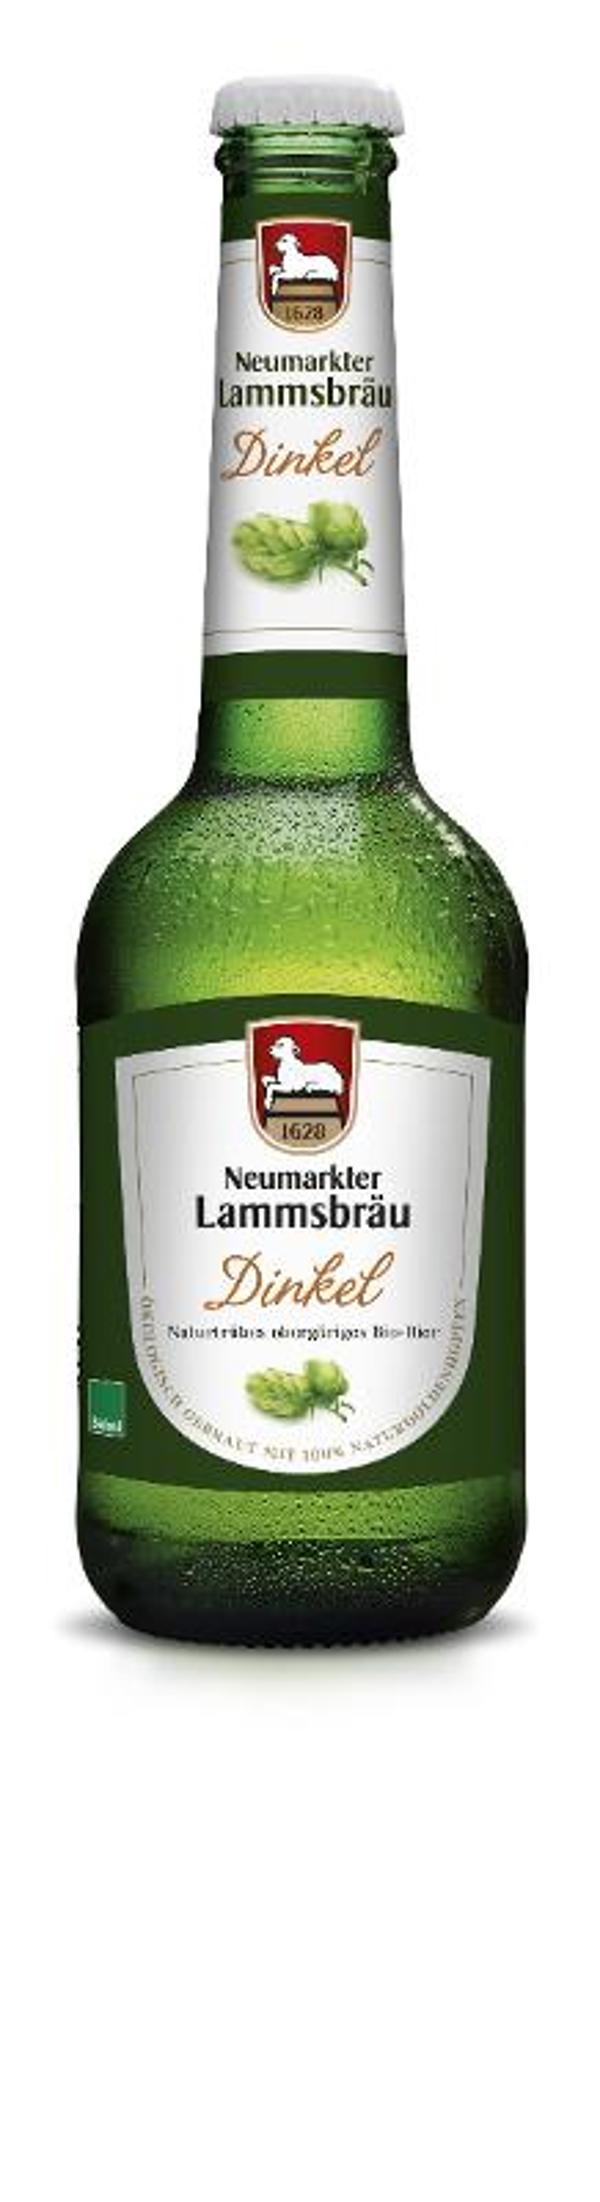 Produktfoto zu Lammsbräu Dinkelbier [0,33l]